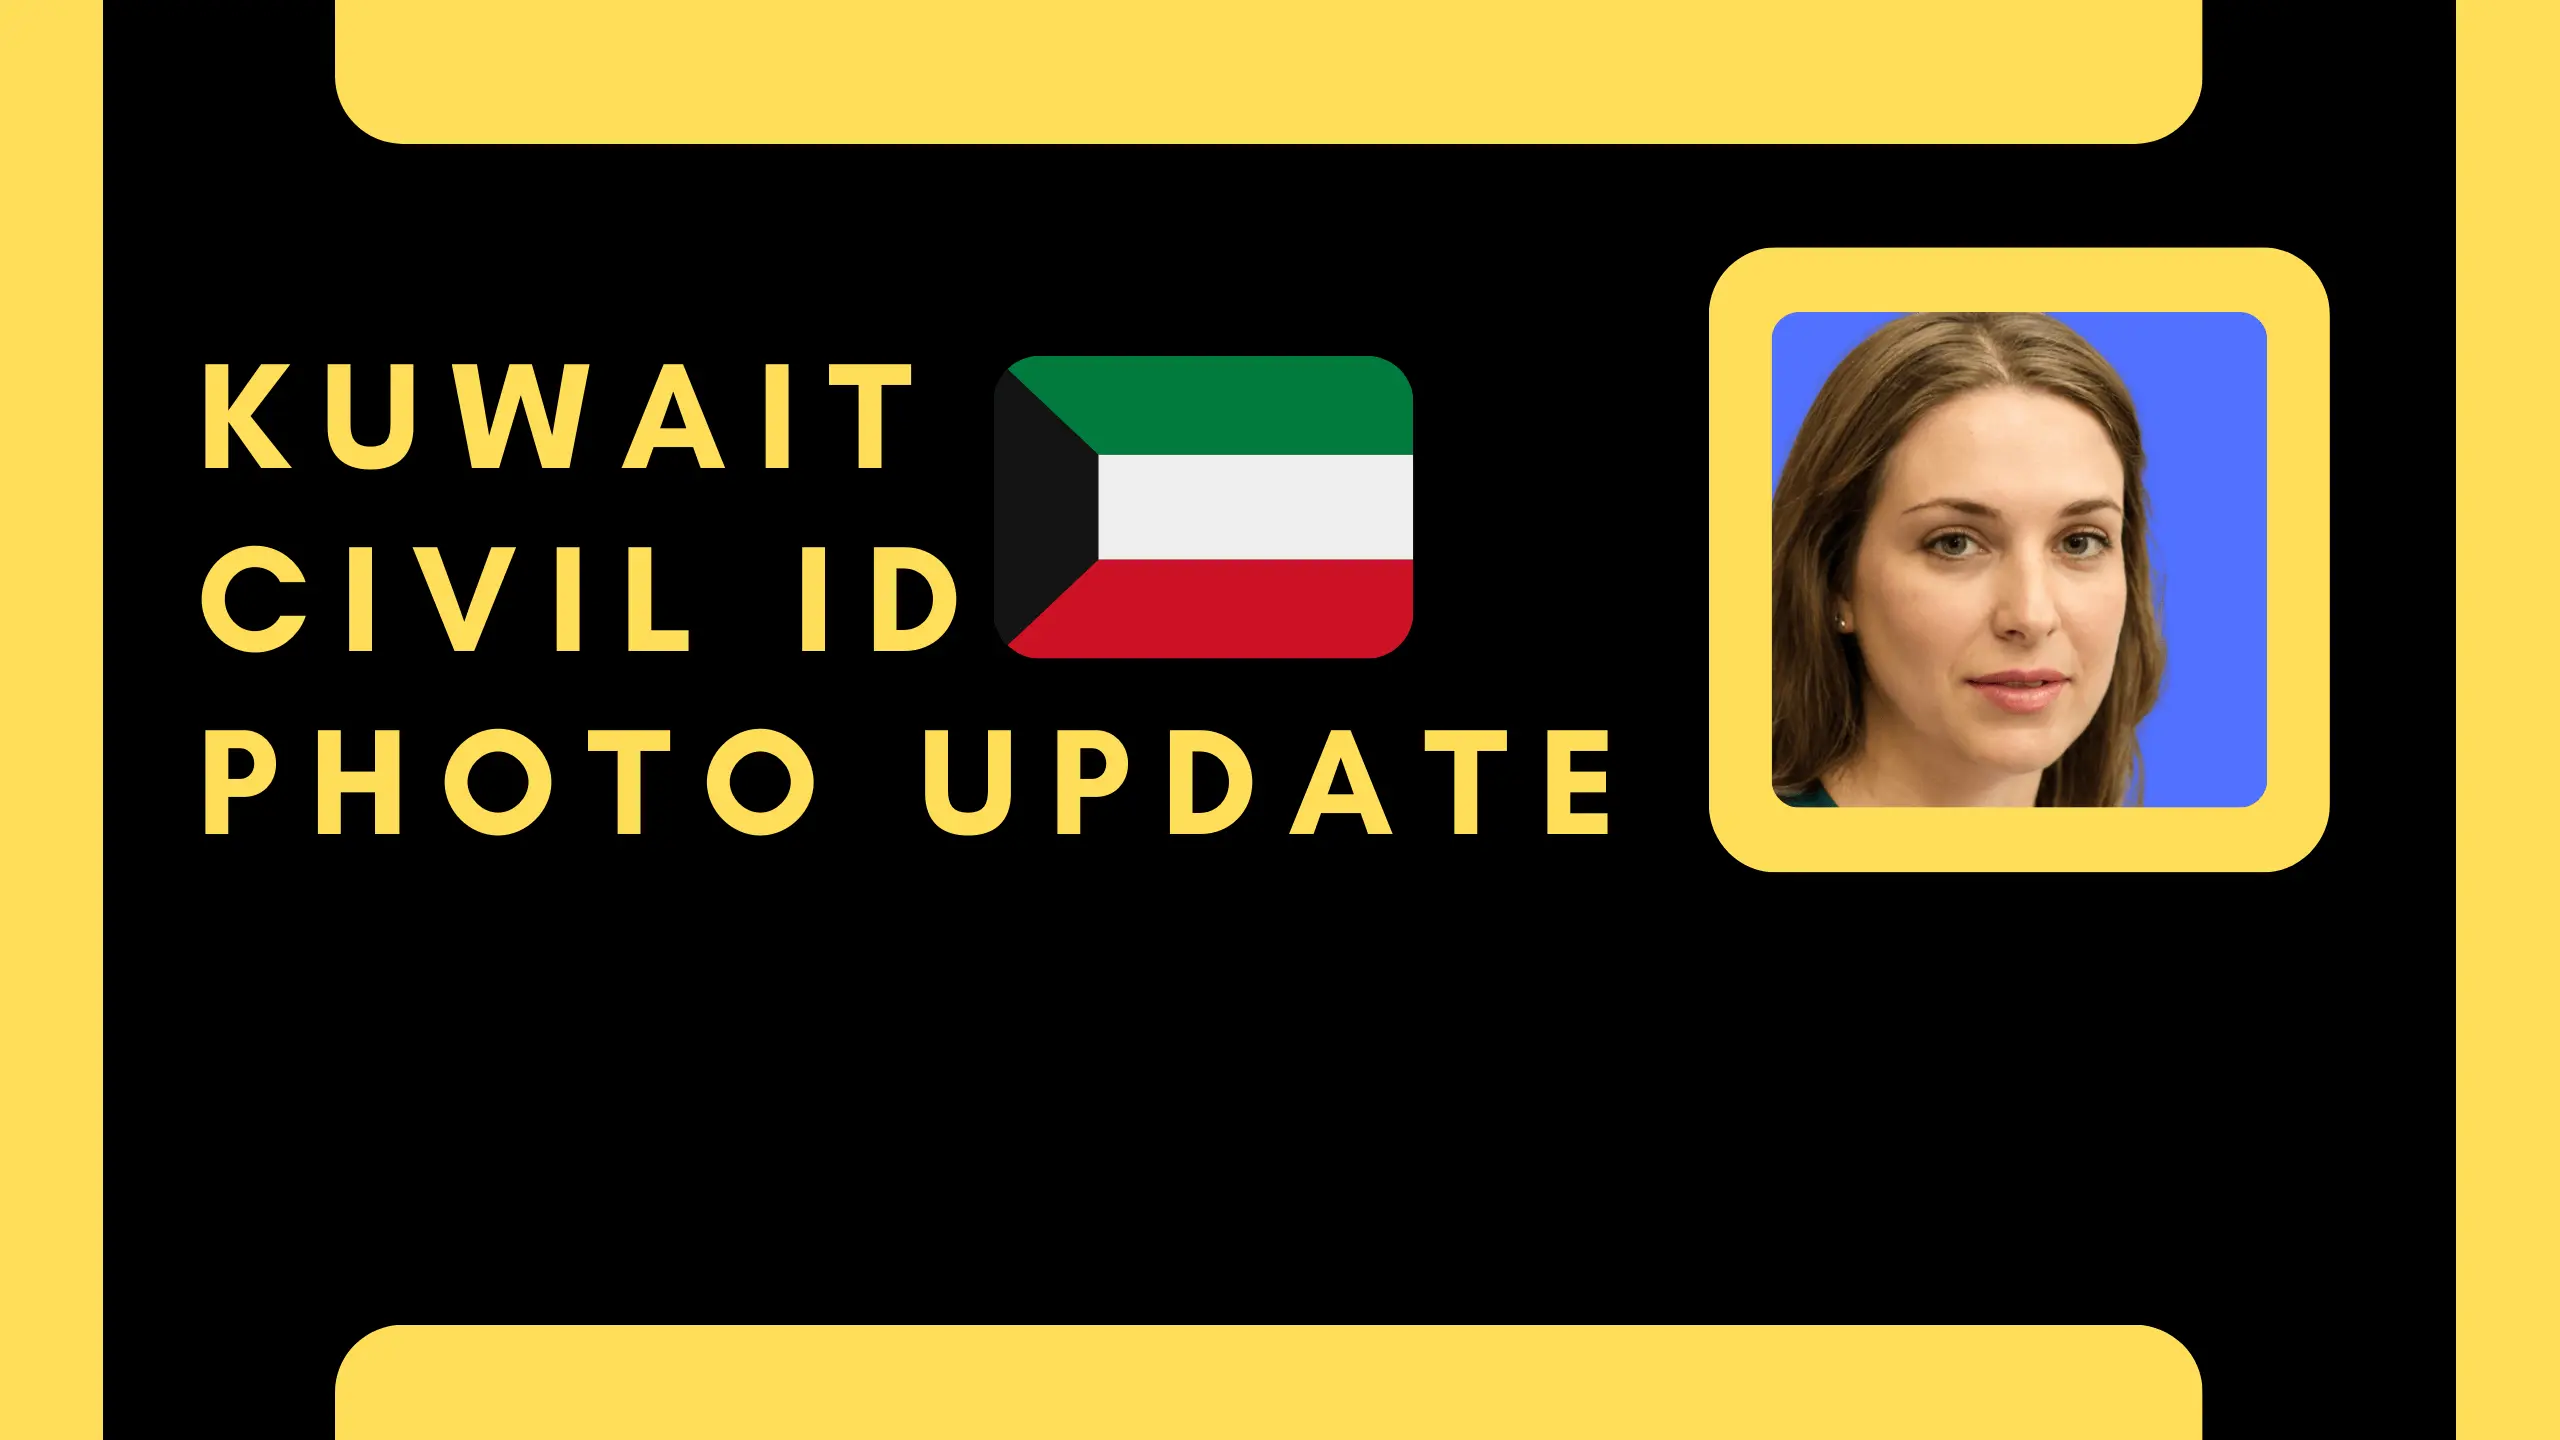 Kuwait Civil ID Photo Update